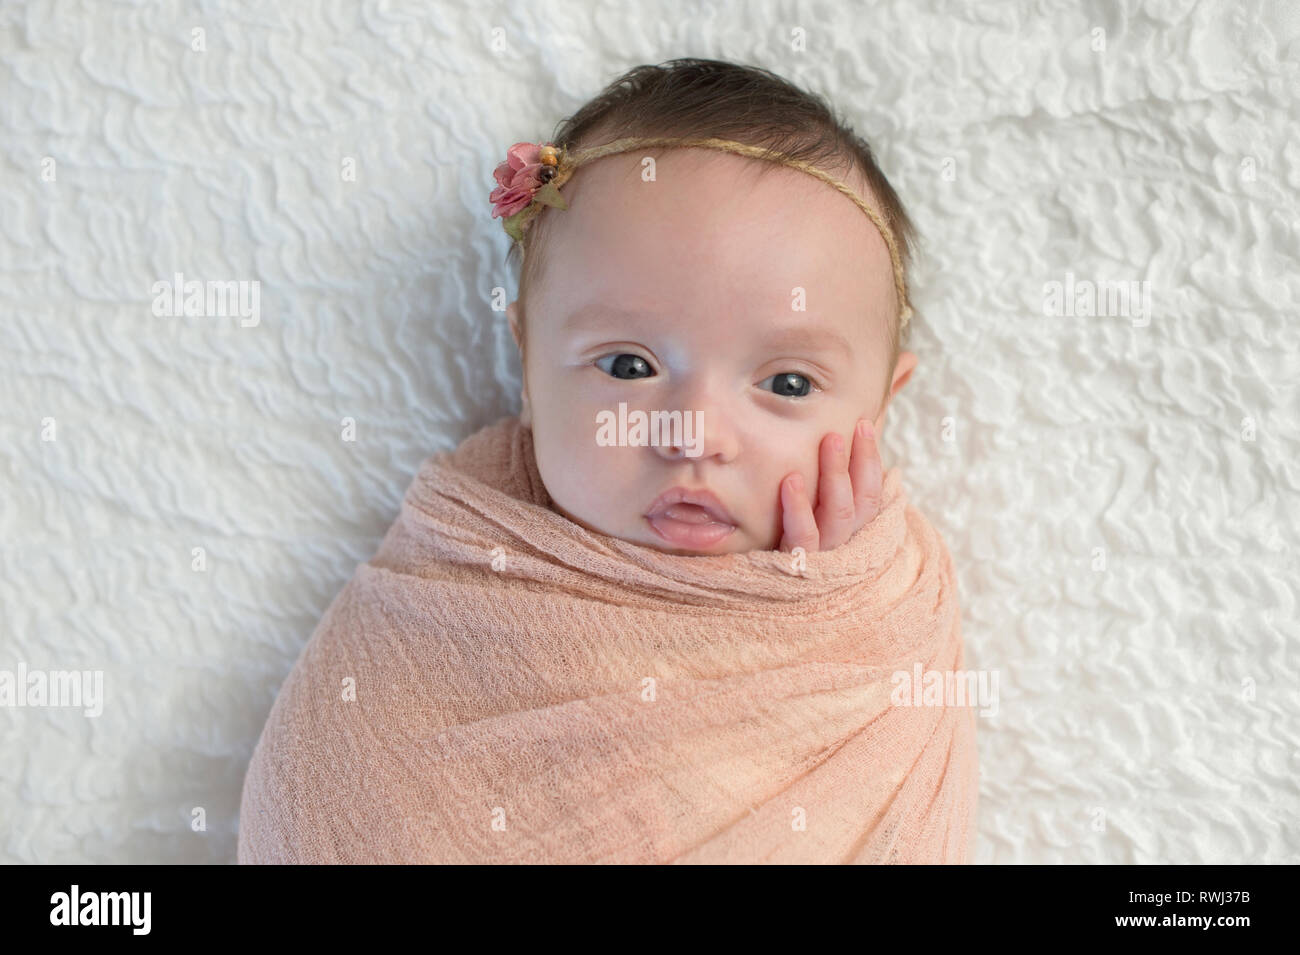 Alert Monate altes Baby girl Gepuckte in einem Pfirsichfarbene wickeln. Im Studio auf einer weißen Decke geschossen. Stockfoto